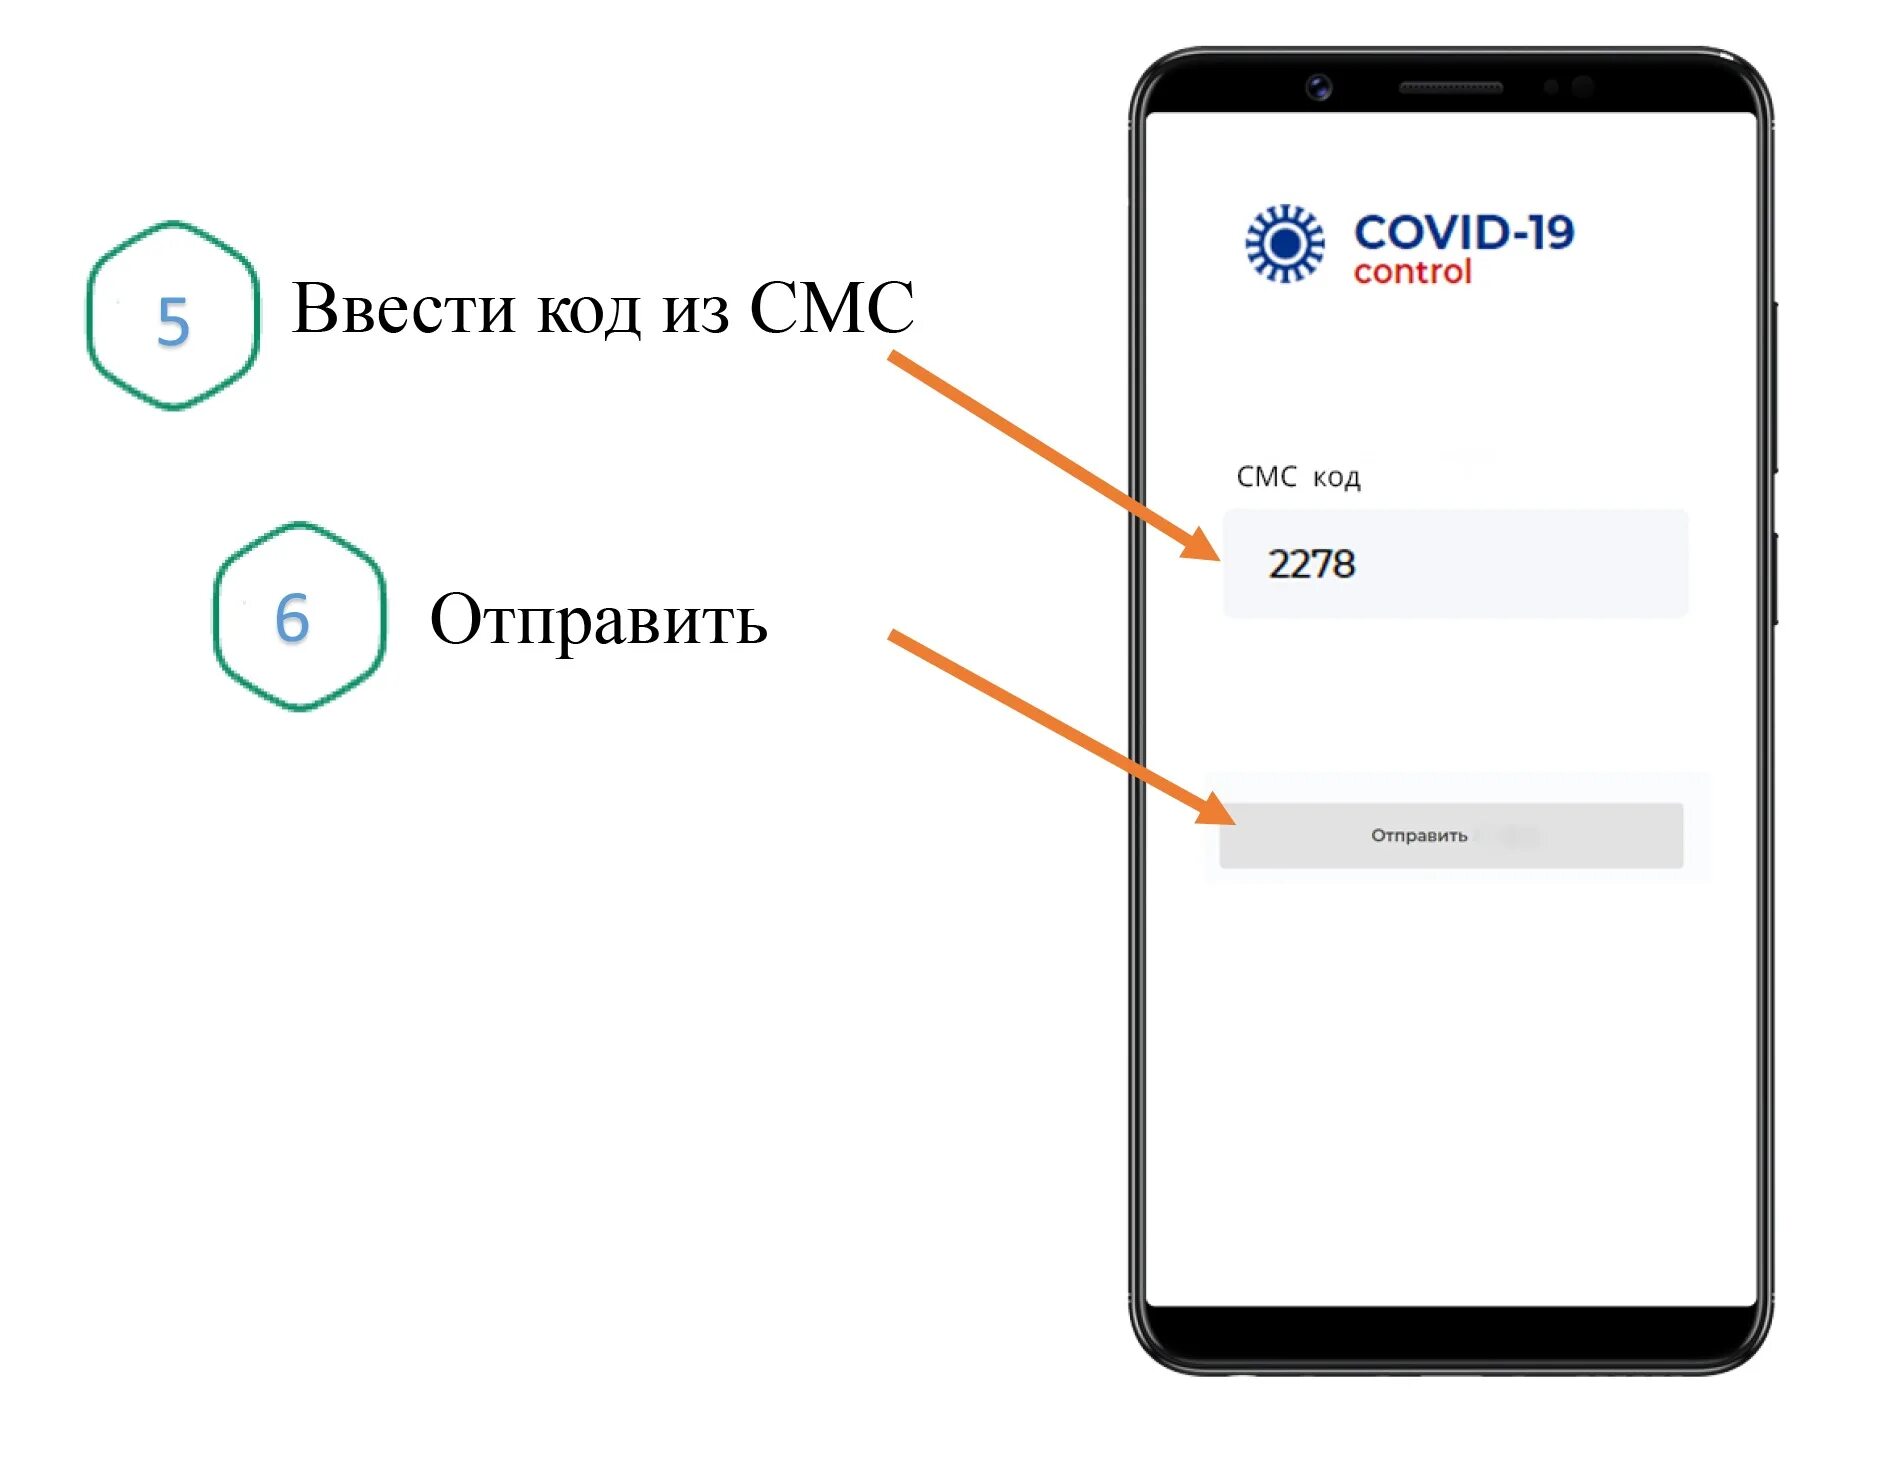 Заходи код. Mos.ru QR код. Регистрация по QR коду. Памятка по QR-кодам. Памятка «регистрация по QR-коду для посещения общественных мест».